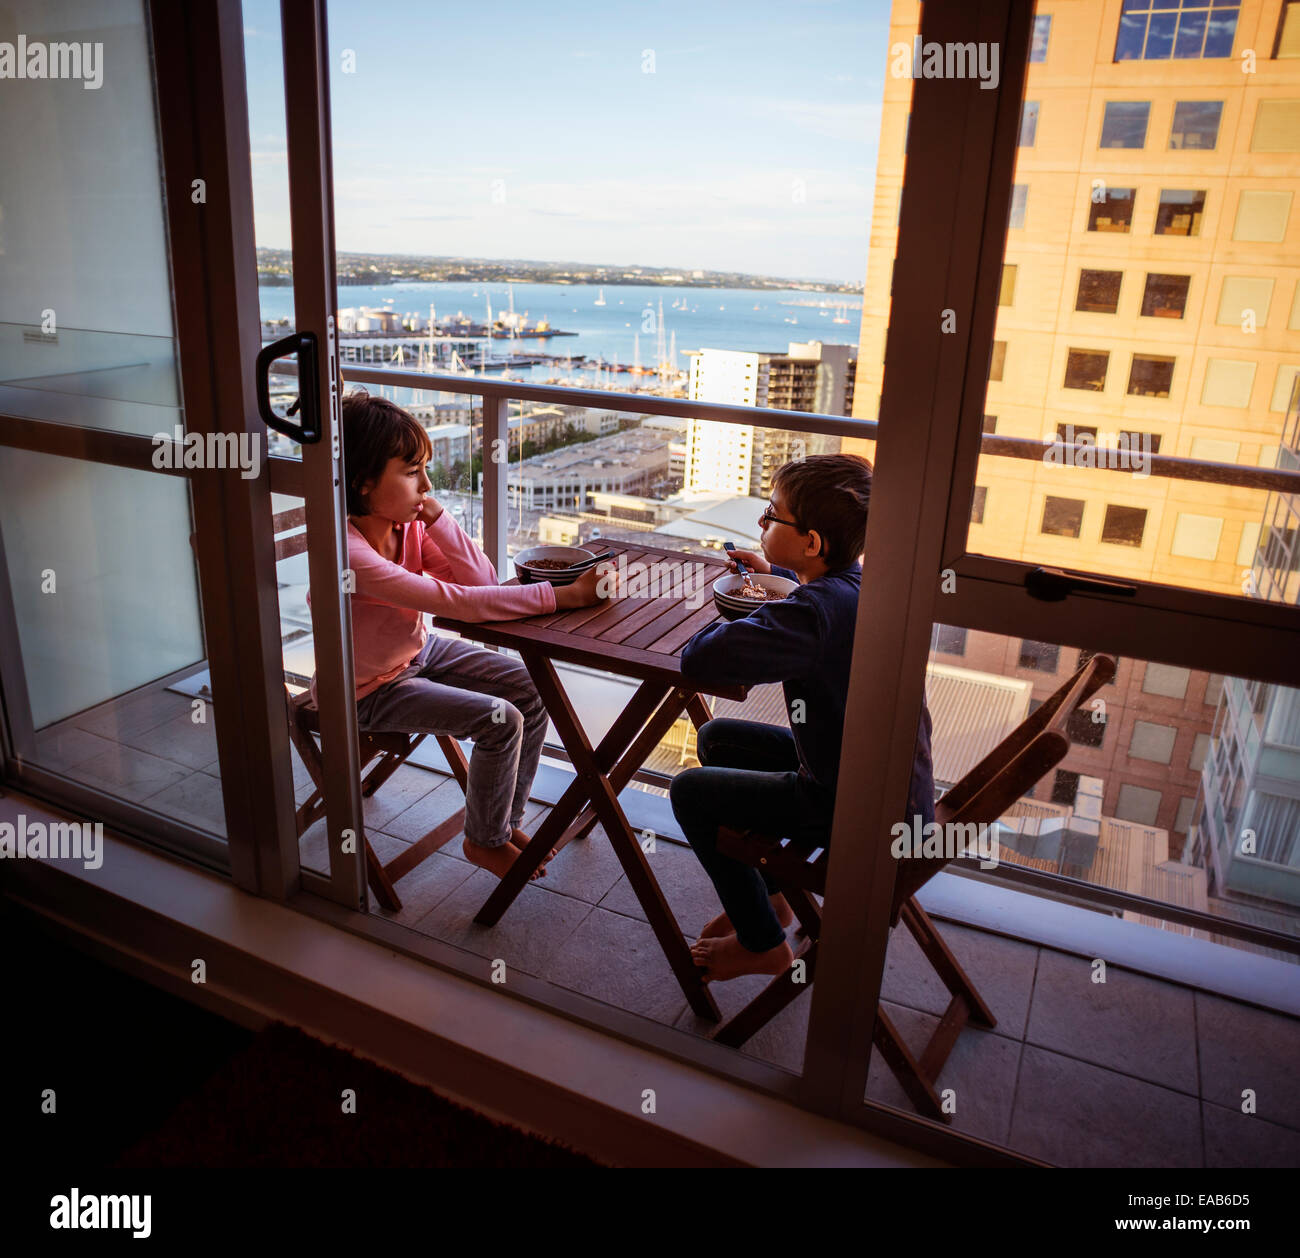 Breakfast on tiny balcony, Auckland Stock Photo